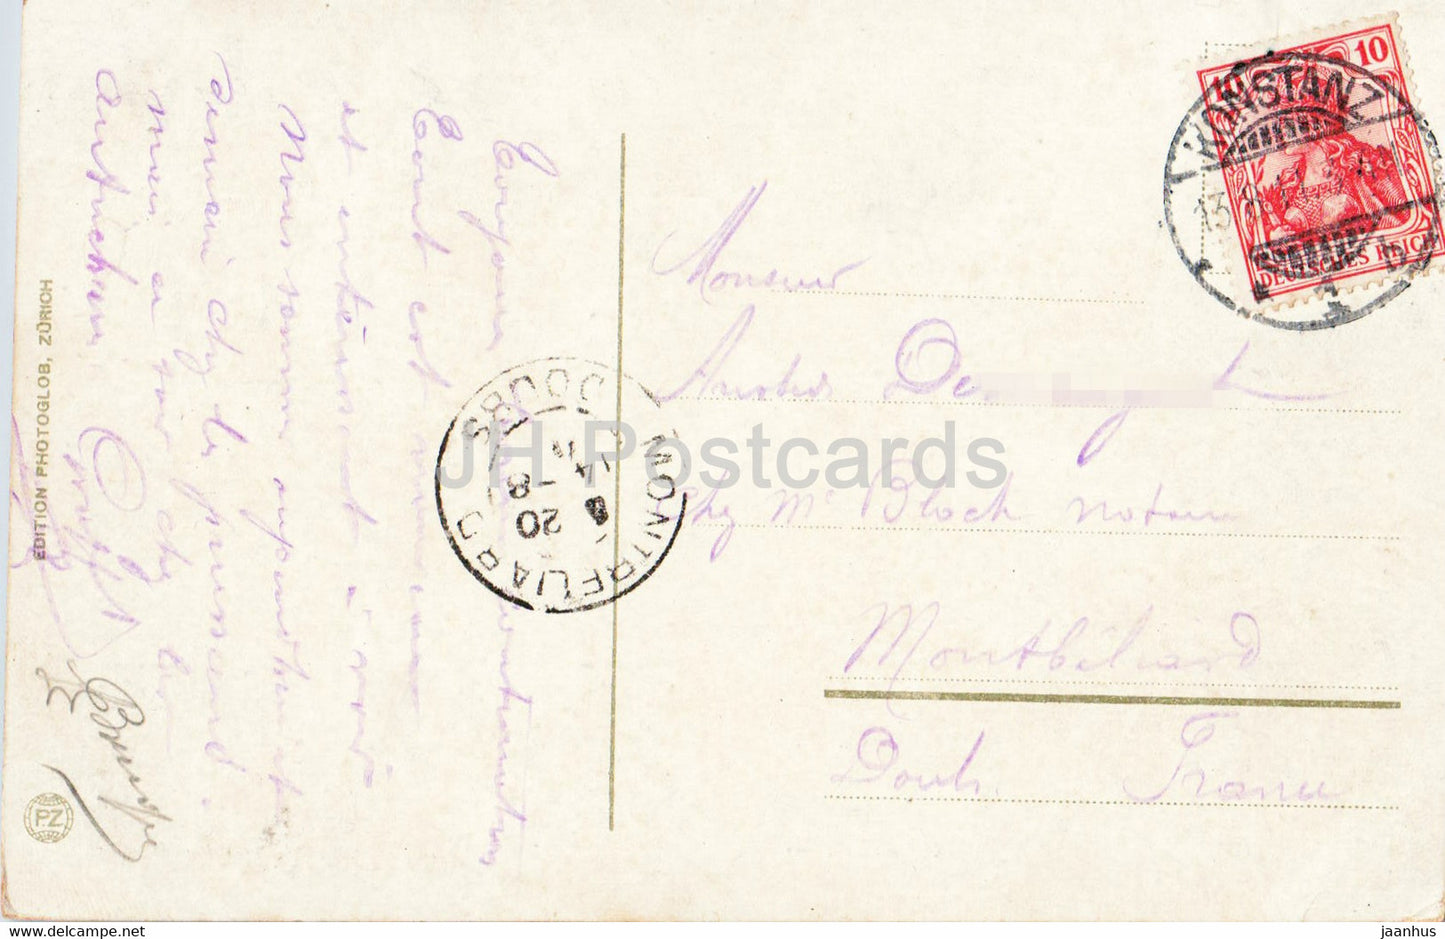 Konstanz von der Seestraße aus - Schiff - Dampfer - 4075 - alte Postkarte - 1911 - Deutschland - gebraucht